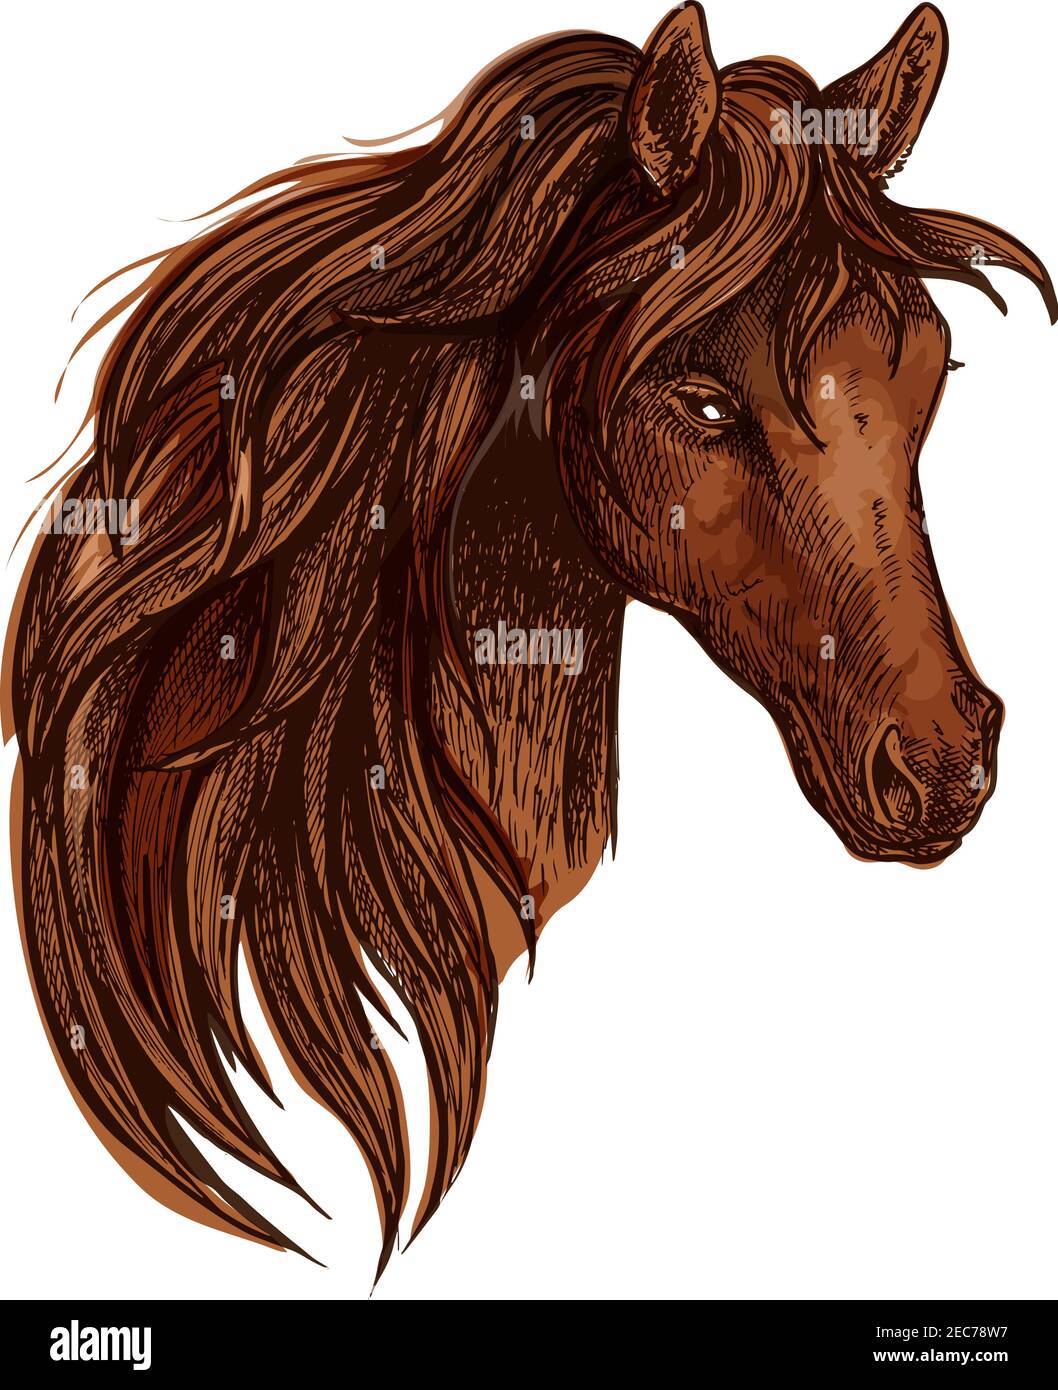 Pferd mit langer gewellter Mähne. Künstlerisches Porträt eines schönen braunen Hengstes mit glänzenden Augen und stolzer Optik Stock Vektor